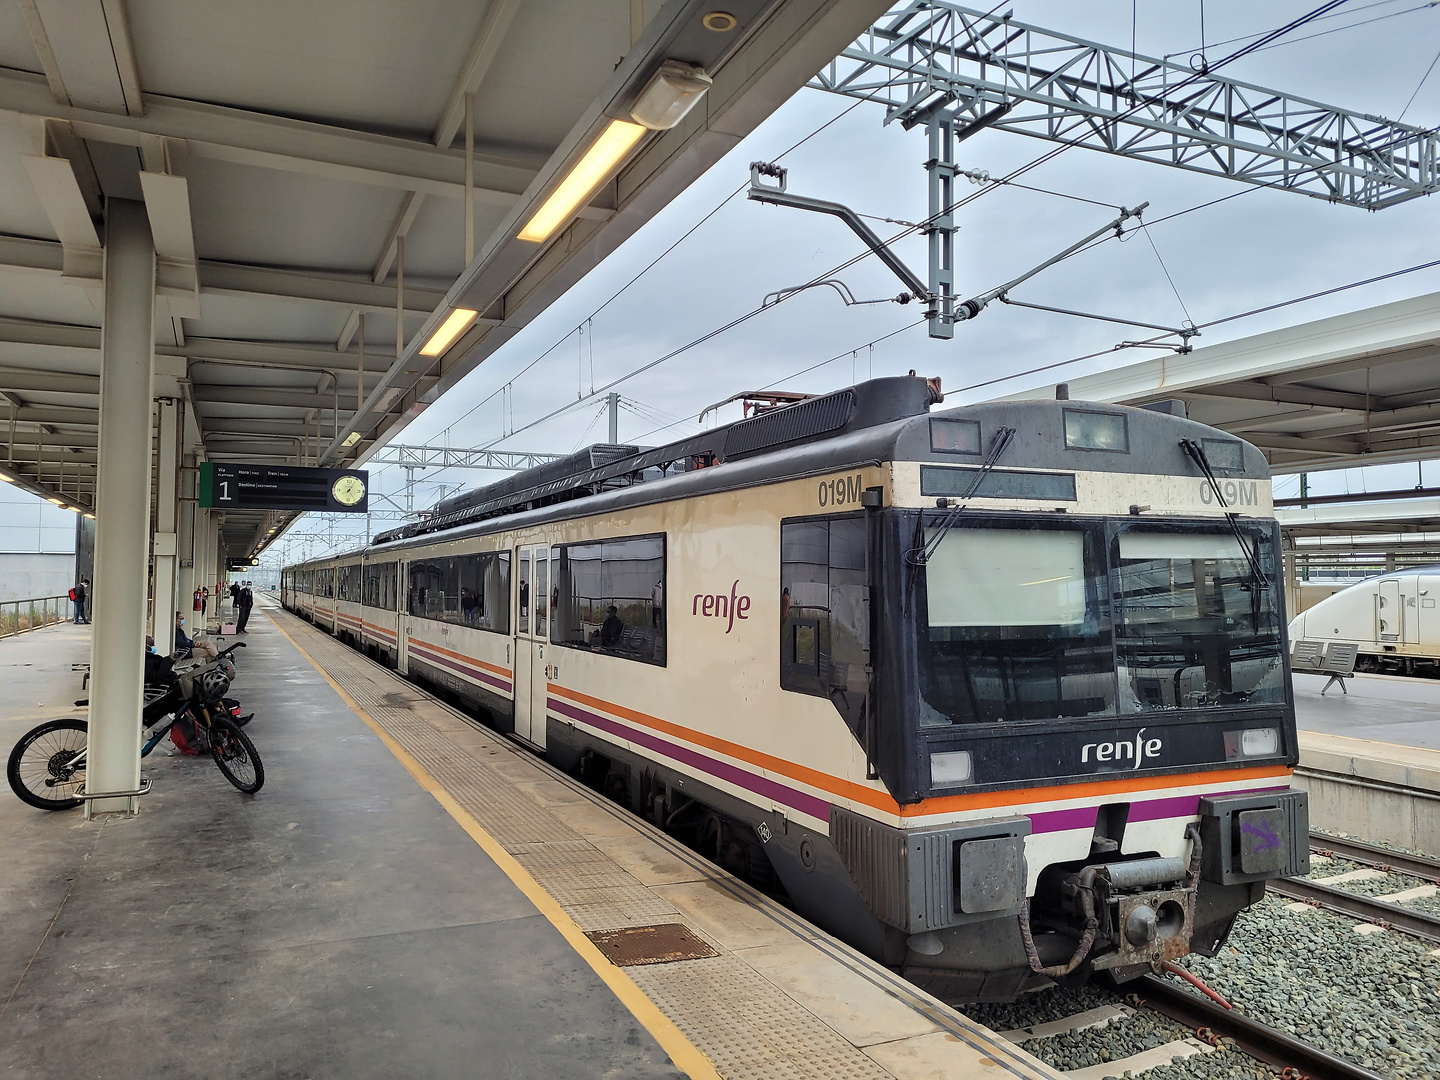 albacete-train1.jpg